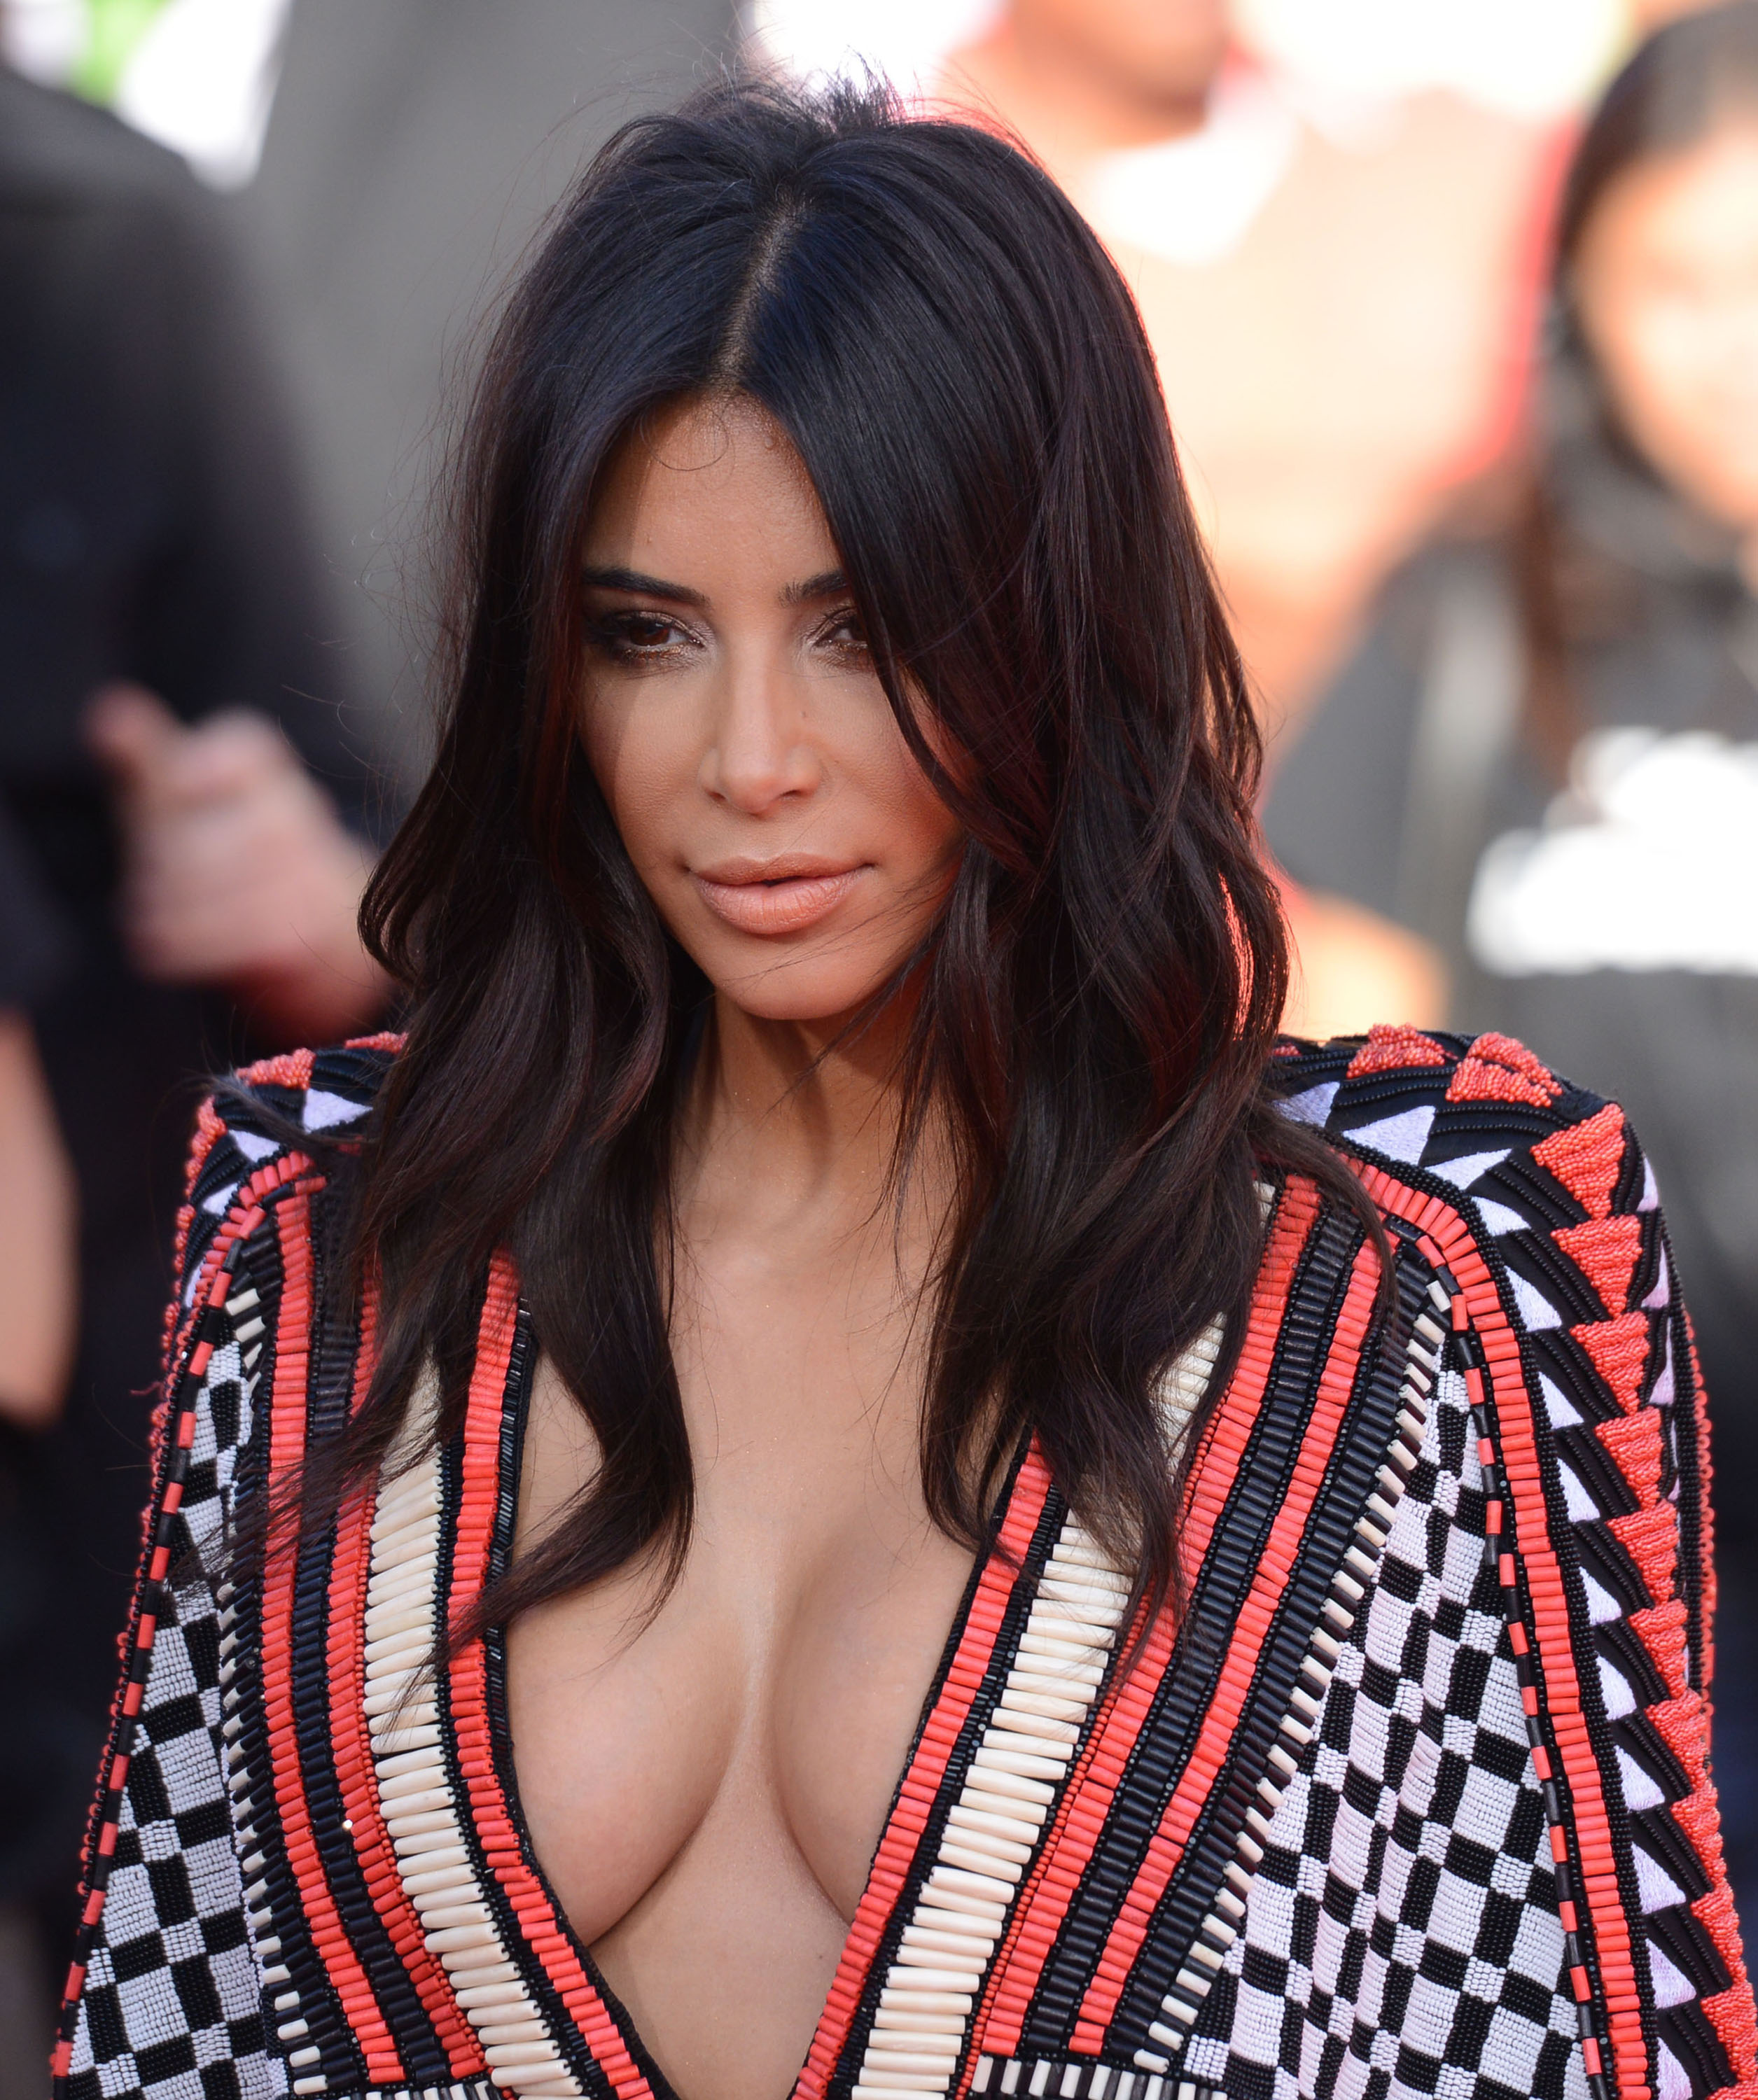 VMAs Fug Carpet: Kim Kardashian and the Jenners